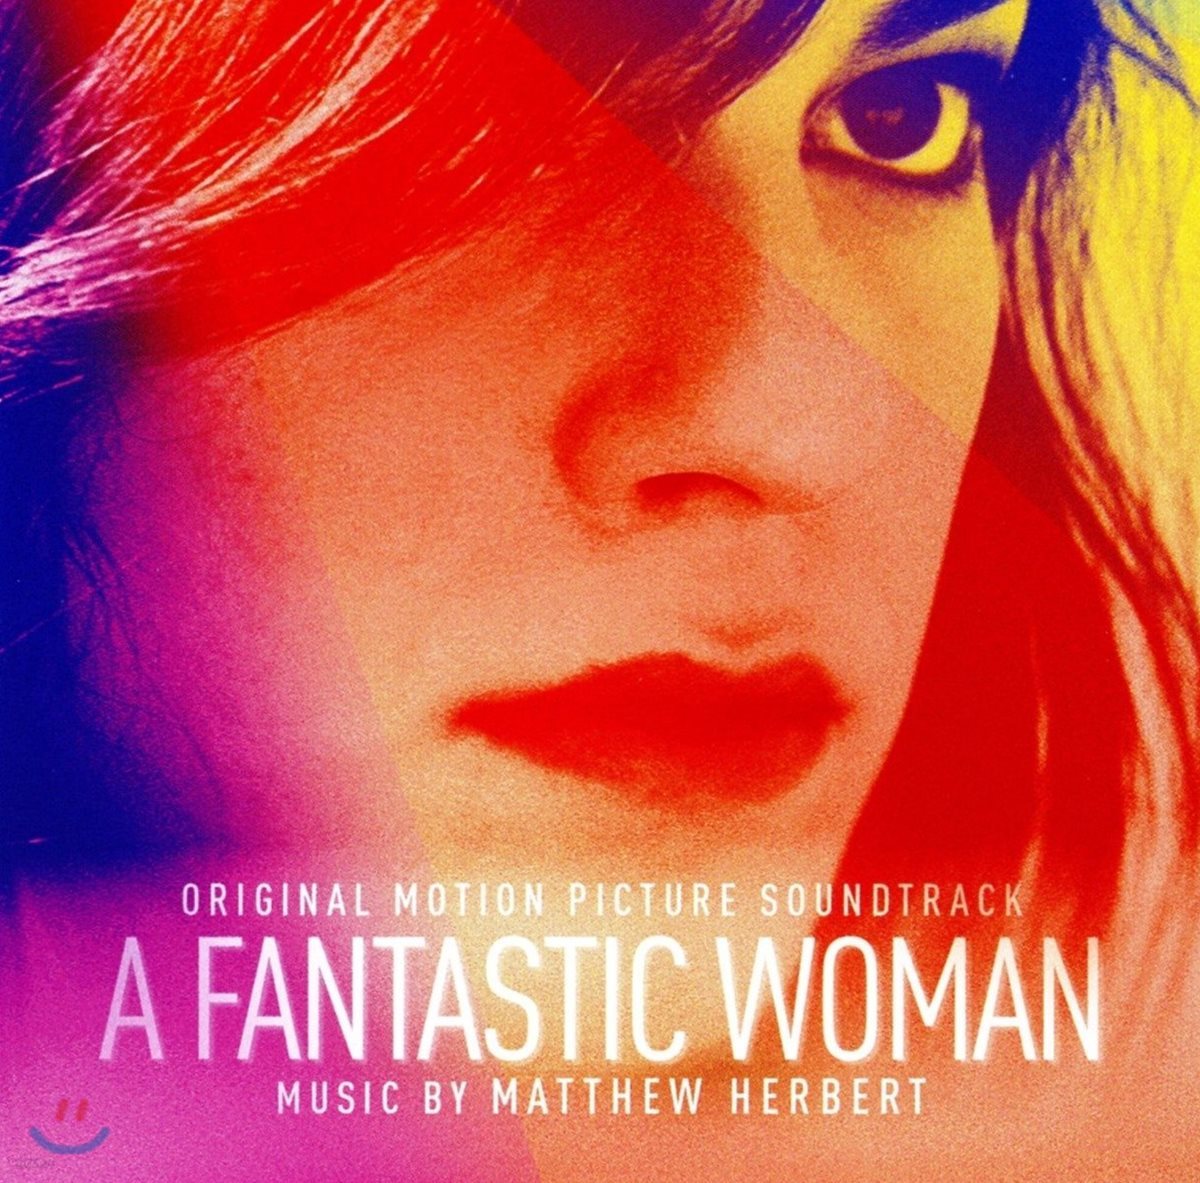 판타스틱 우먼 영화음악 (A Fantastic Woman OST by Matthew Herbert 매튜 허버트)